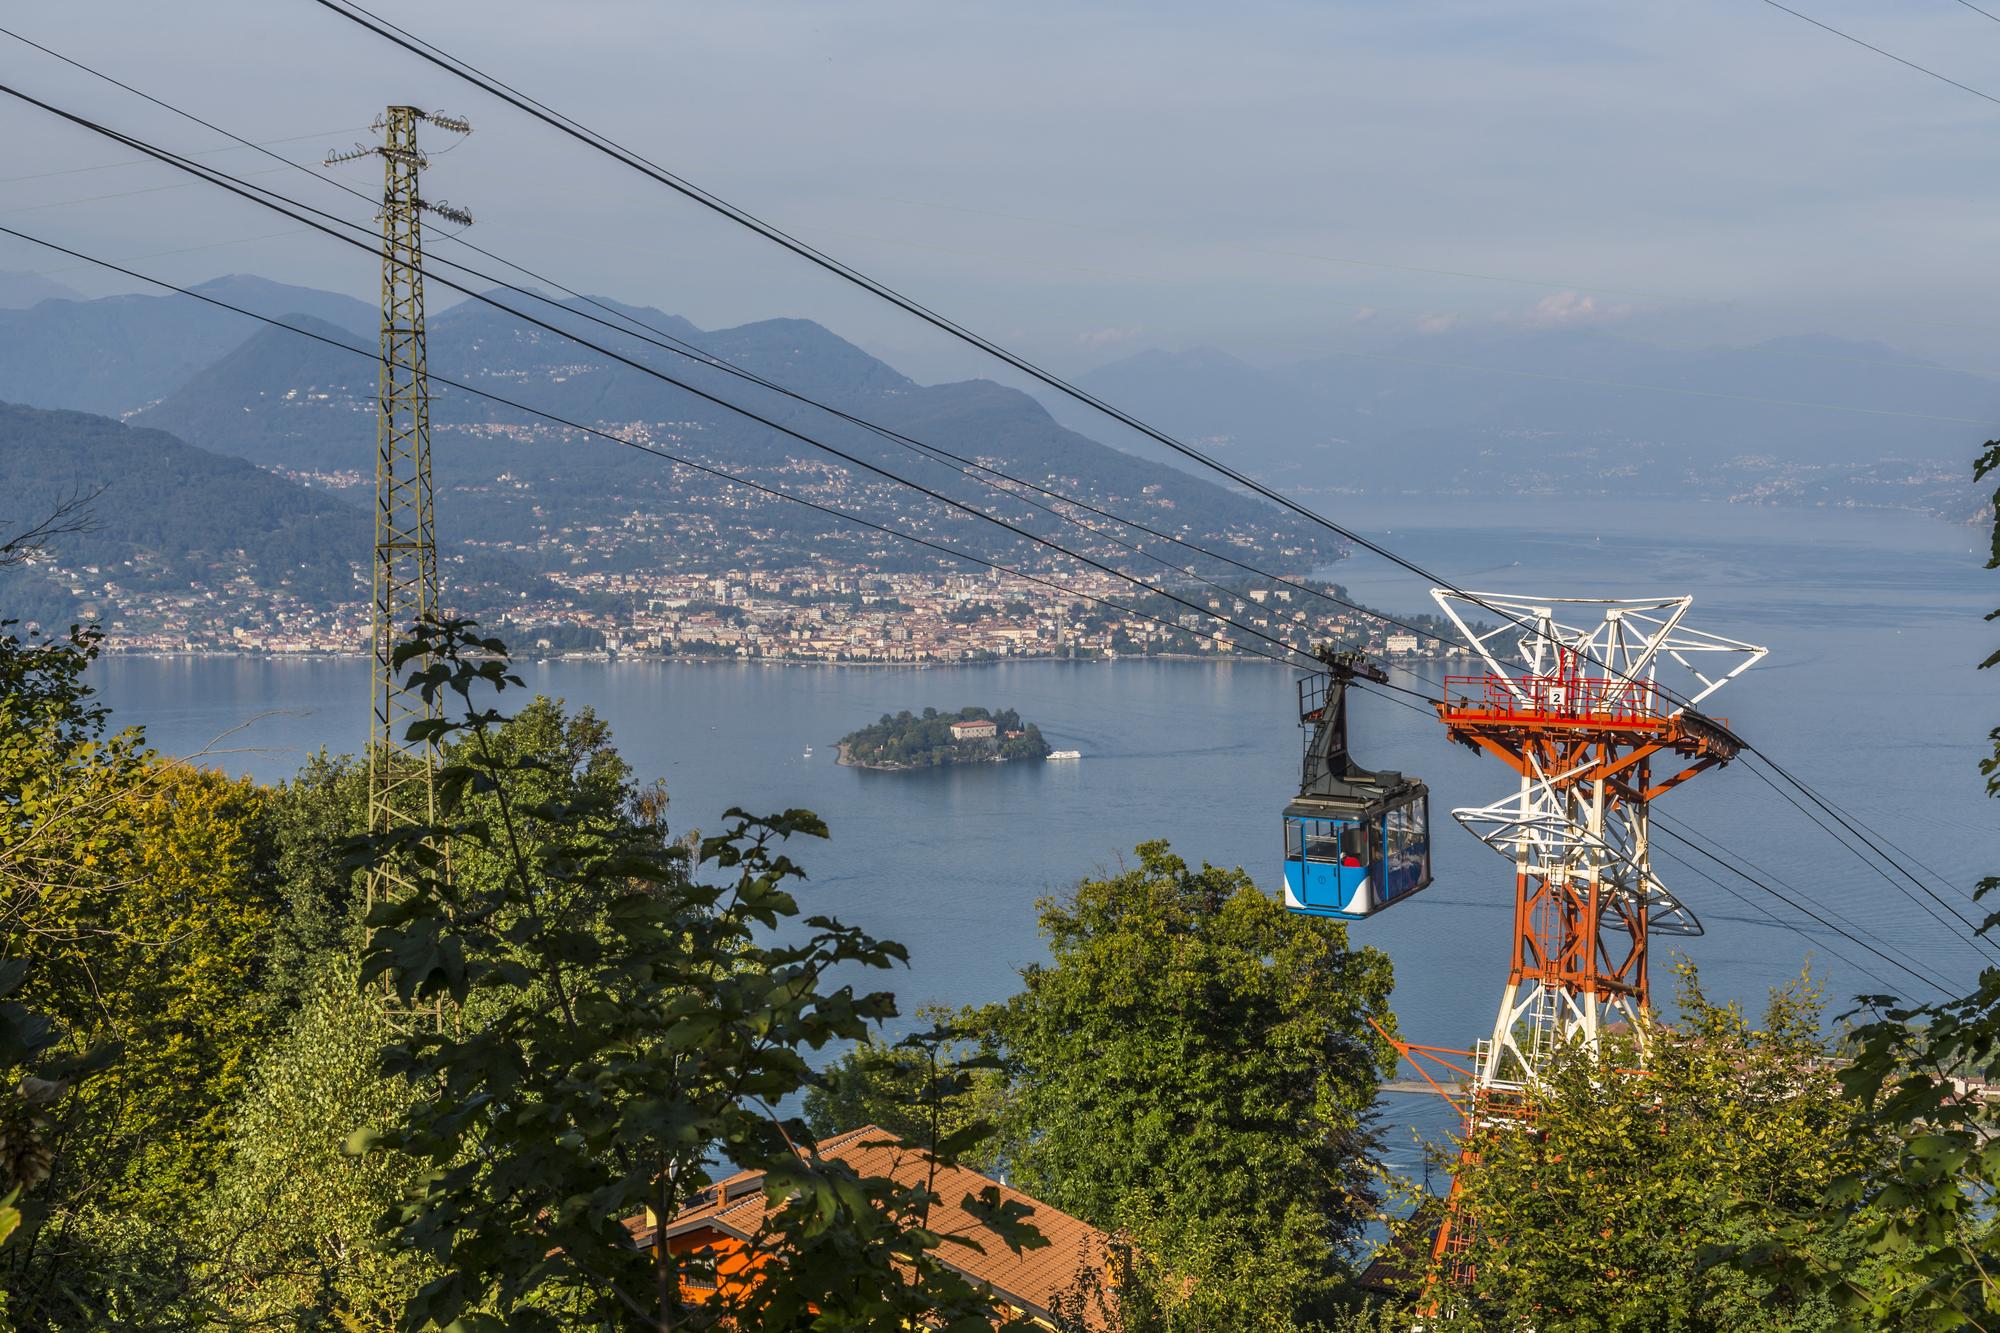 Vue du téléphérique de Stresa Mottarone et du lac Majeur. [AFP - Frank Fell]